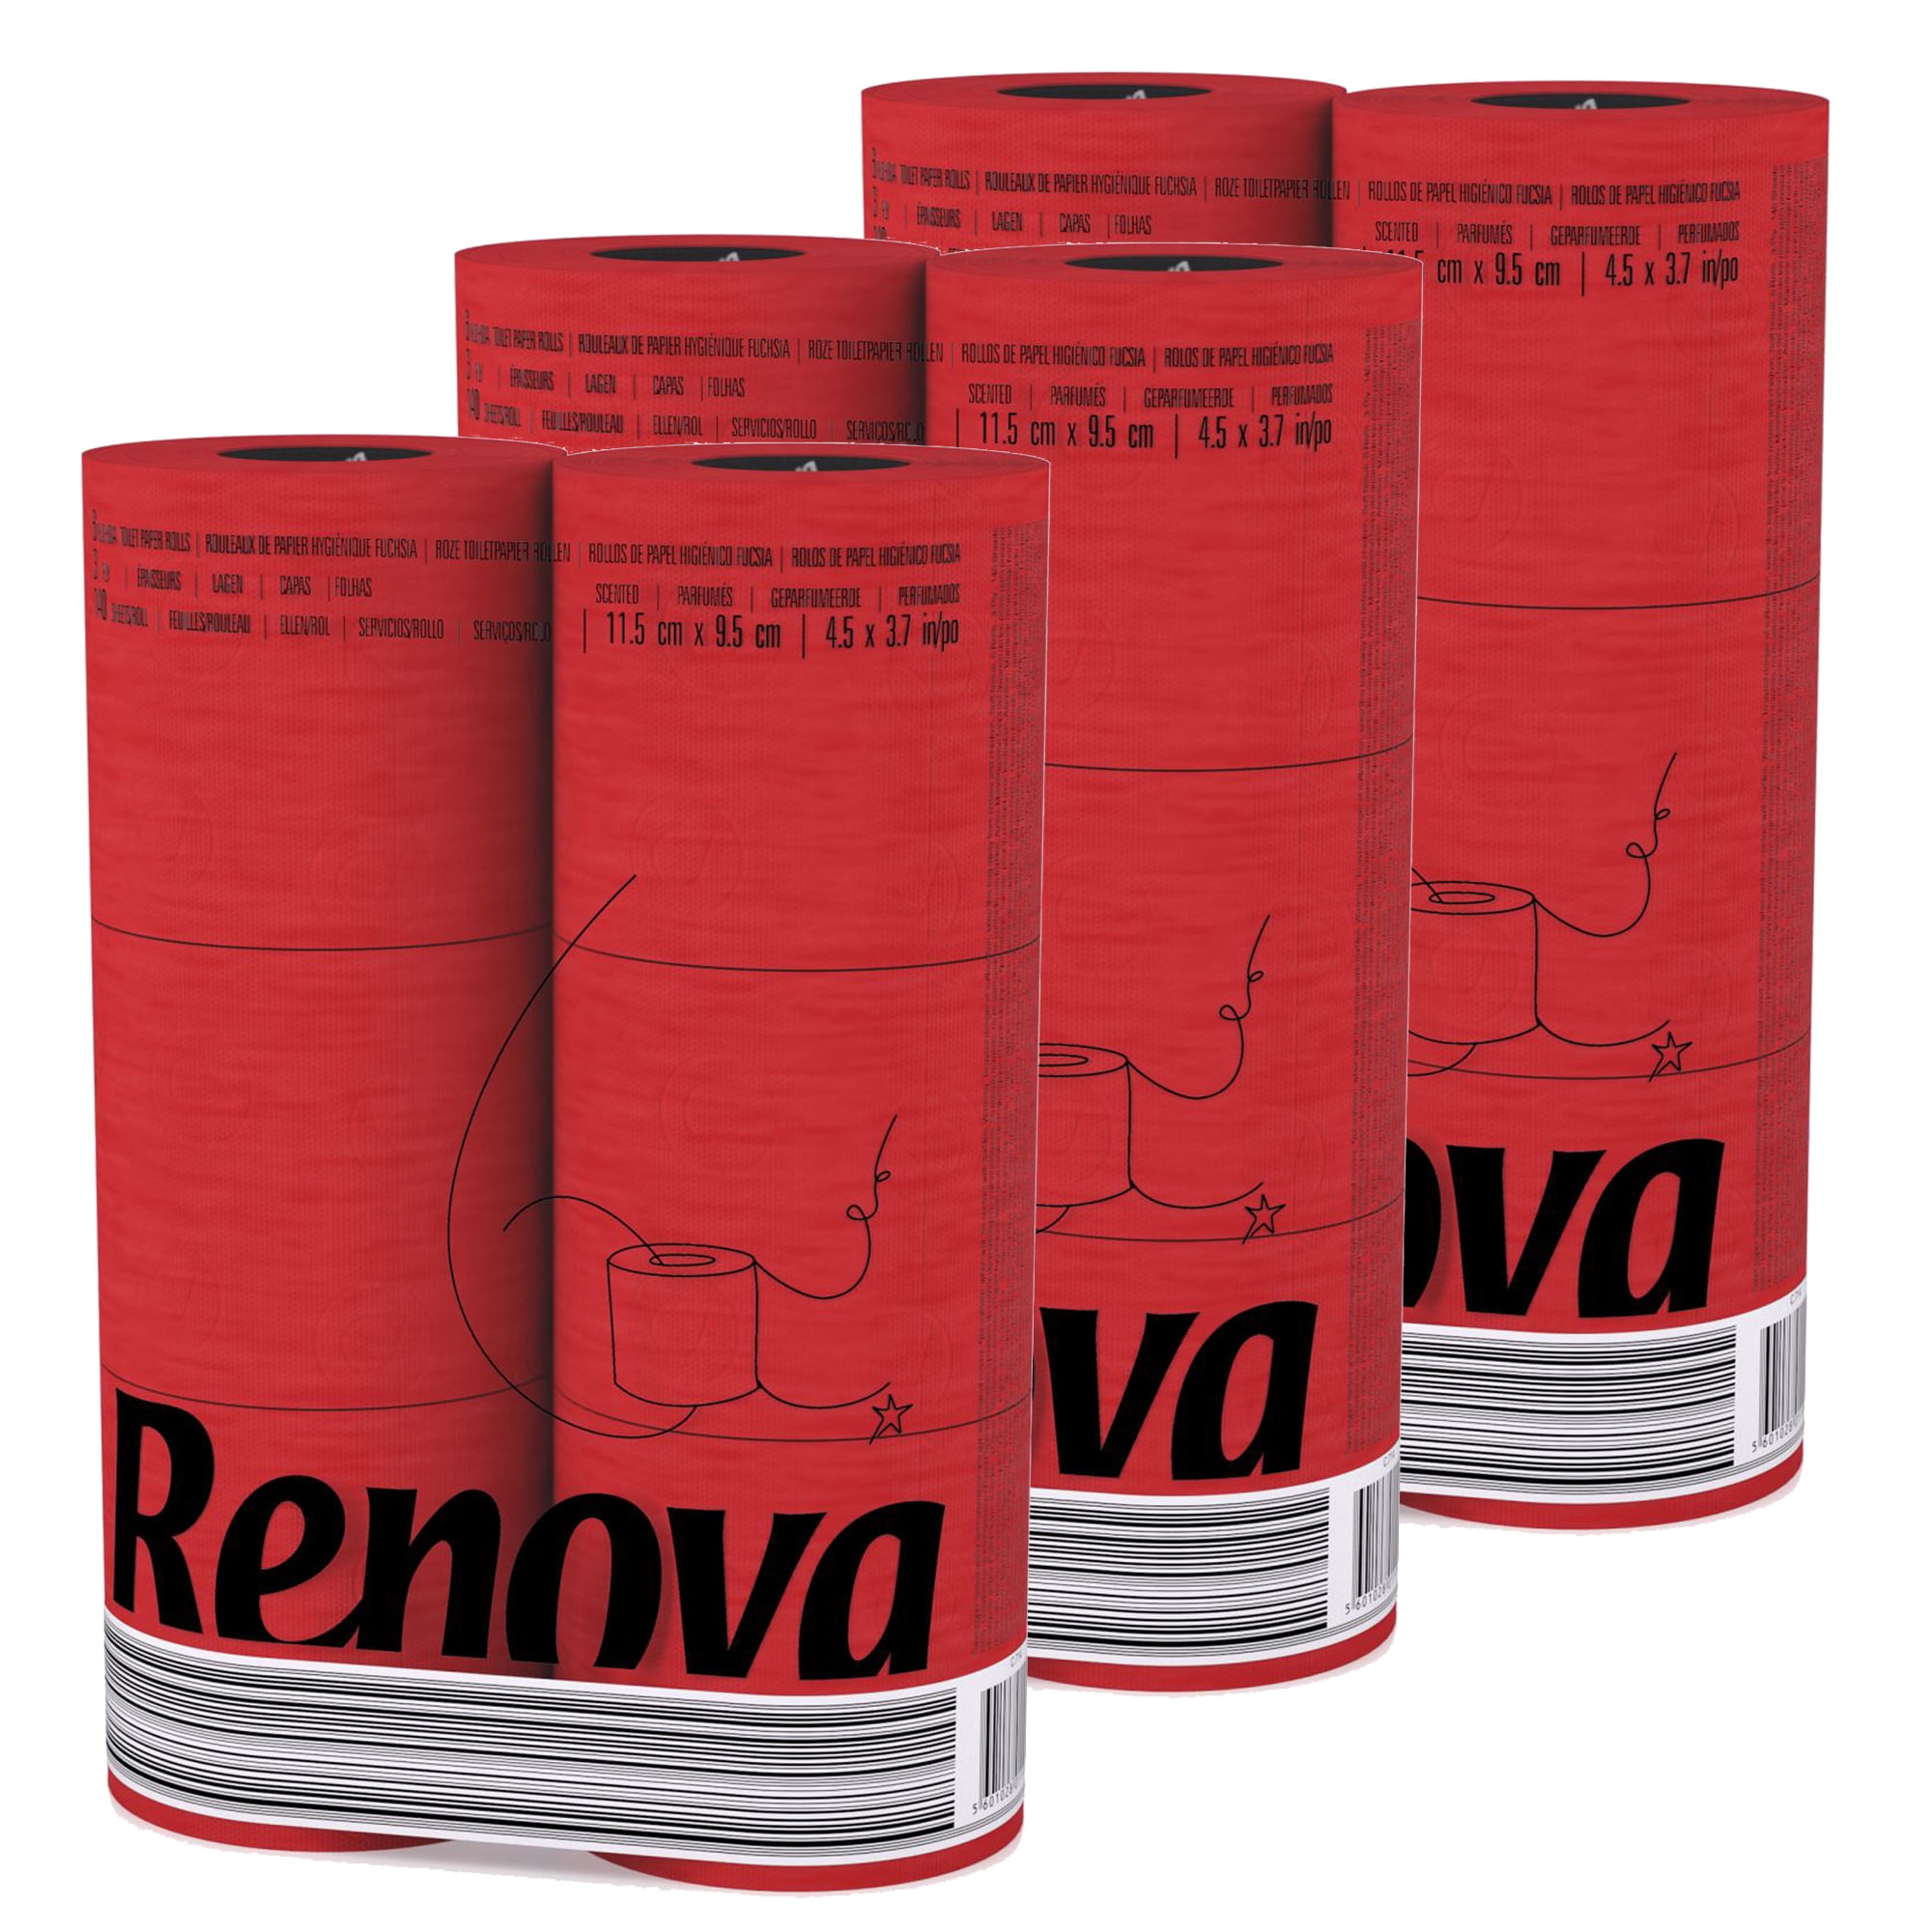  Renova Toilet Roll - Blue Paper (6 Roll Standard Pack) :  Bathroom Tissue : Health & Household